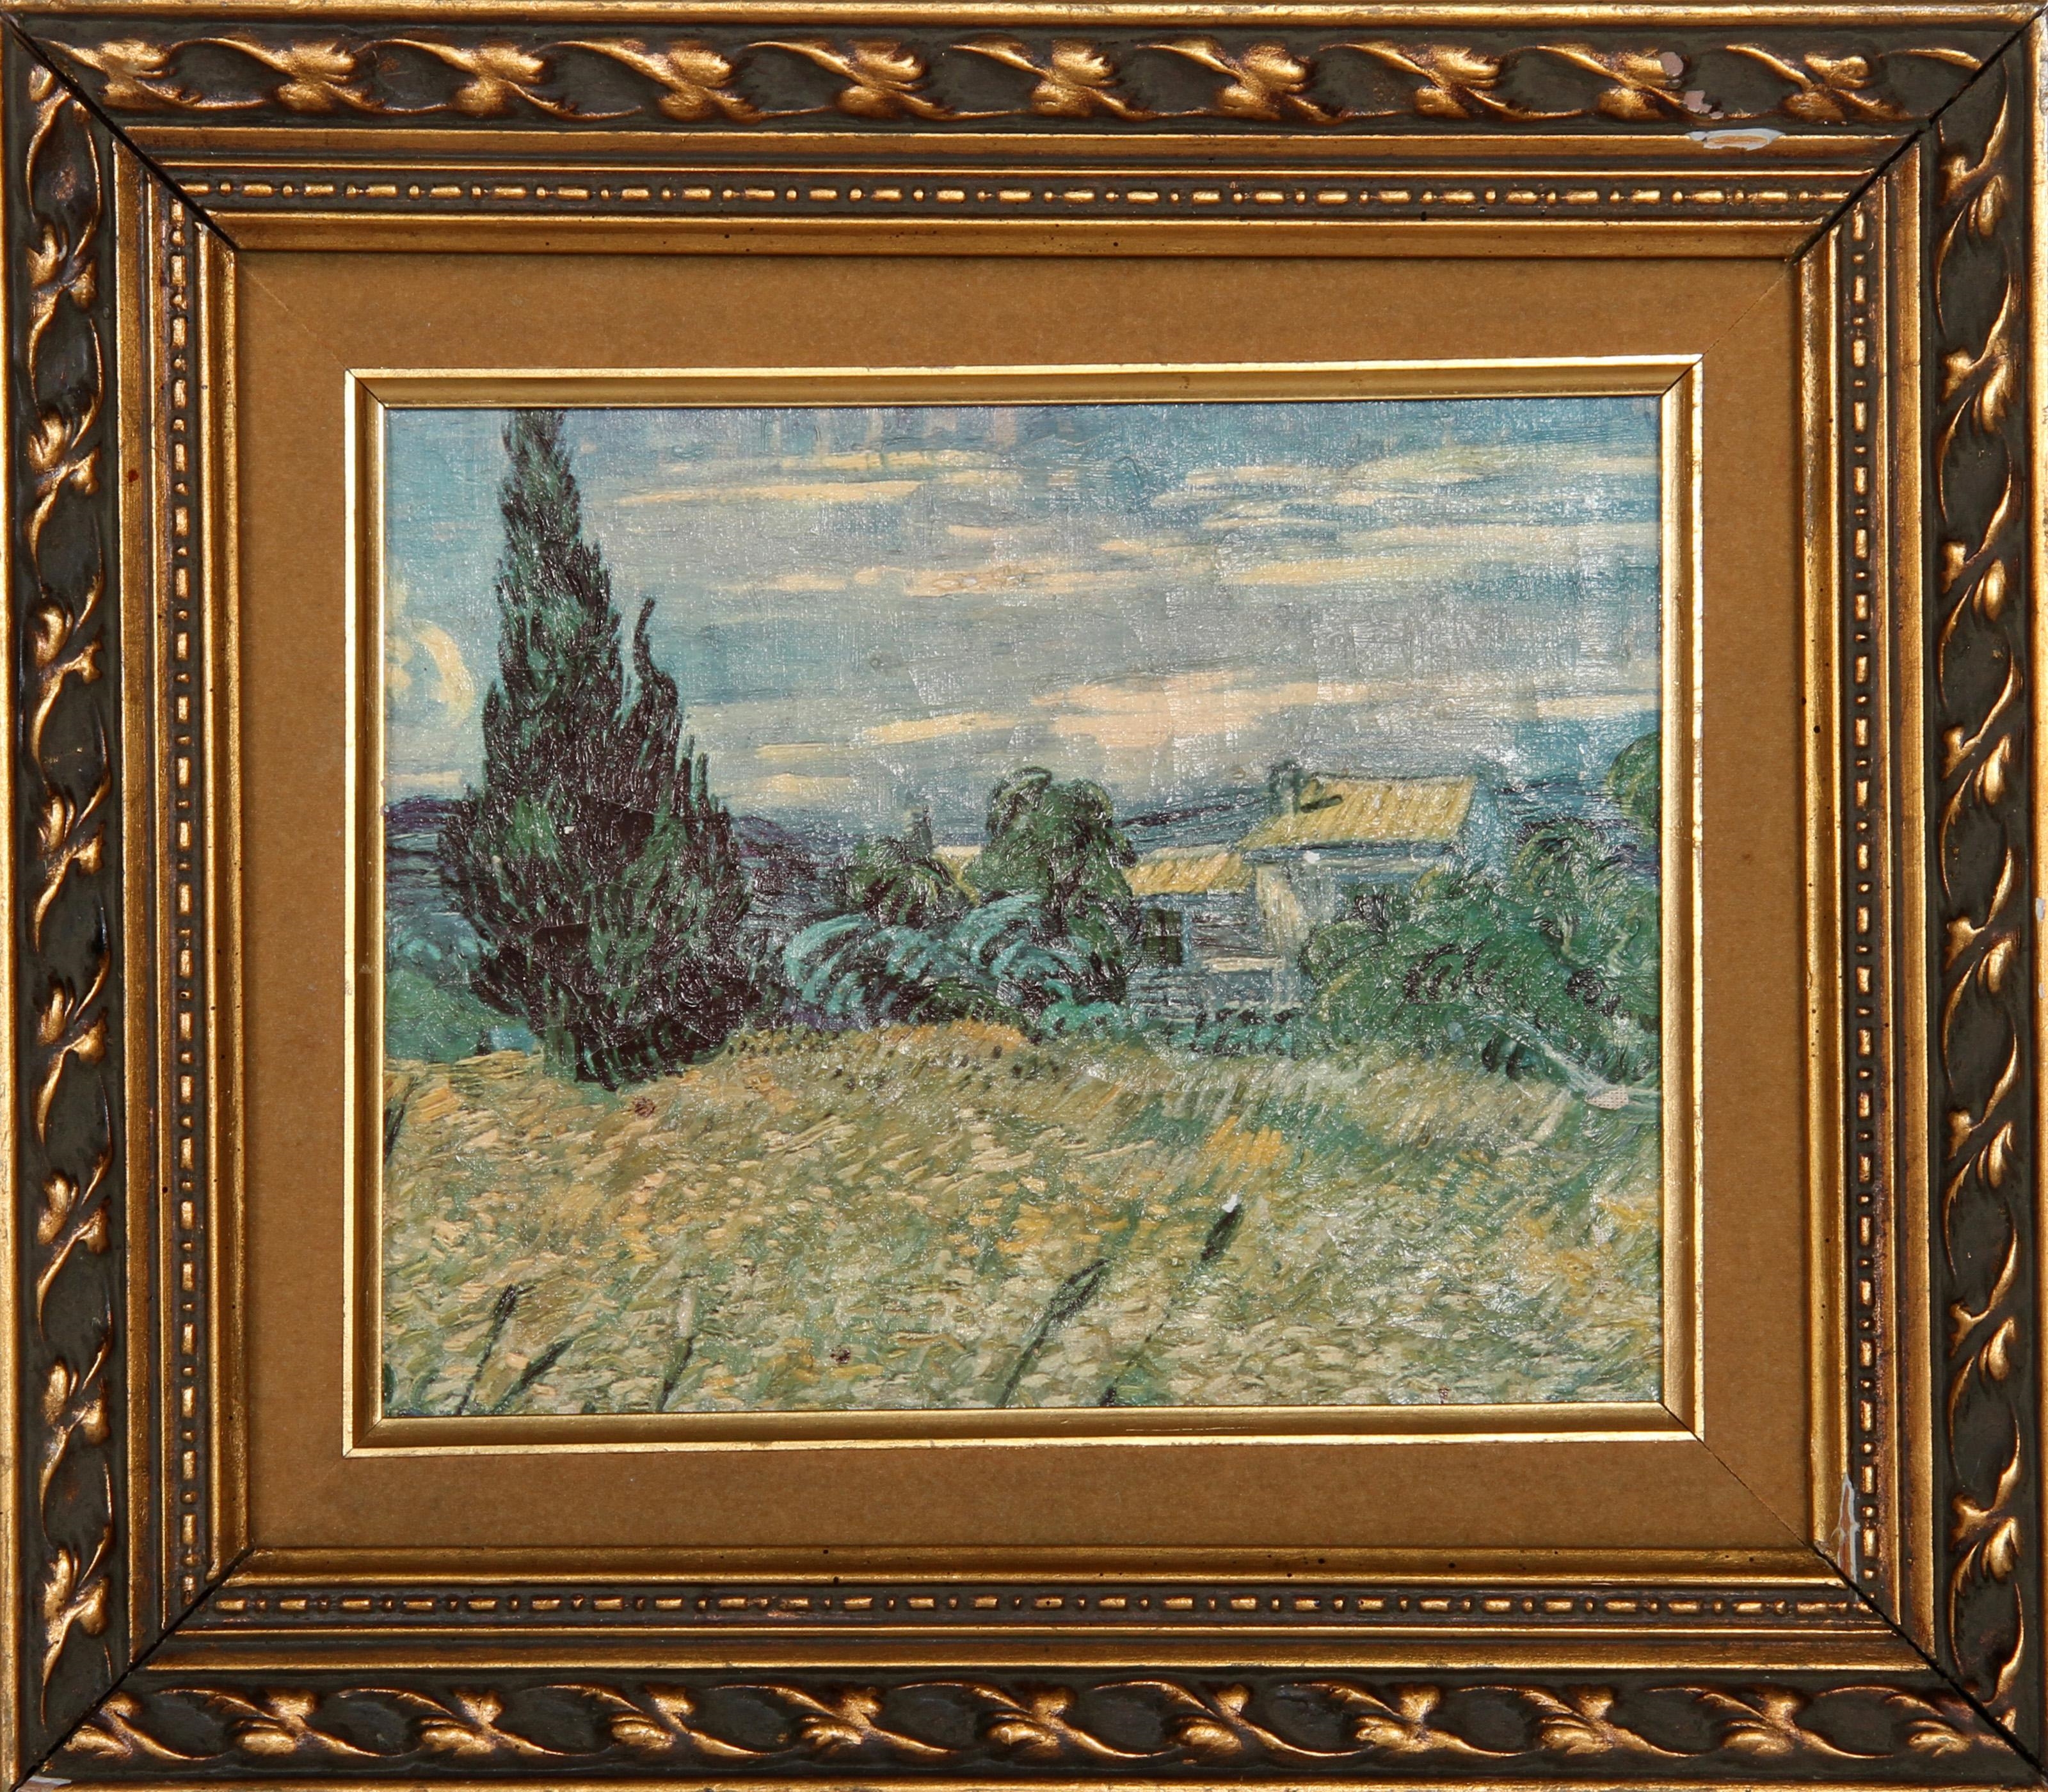 Le Champ de Bles by Vincent van Gogh, 1853